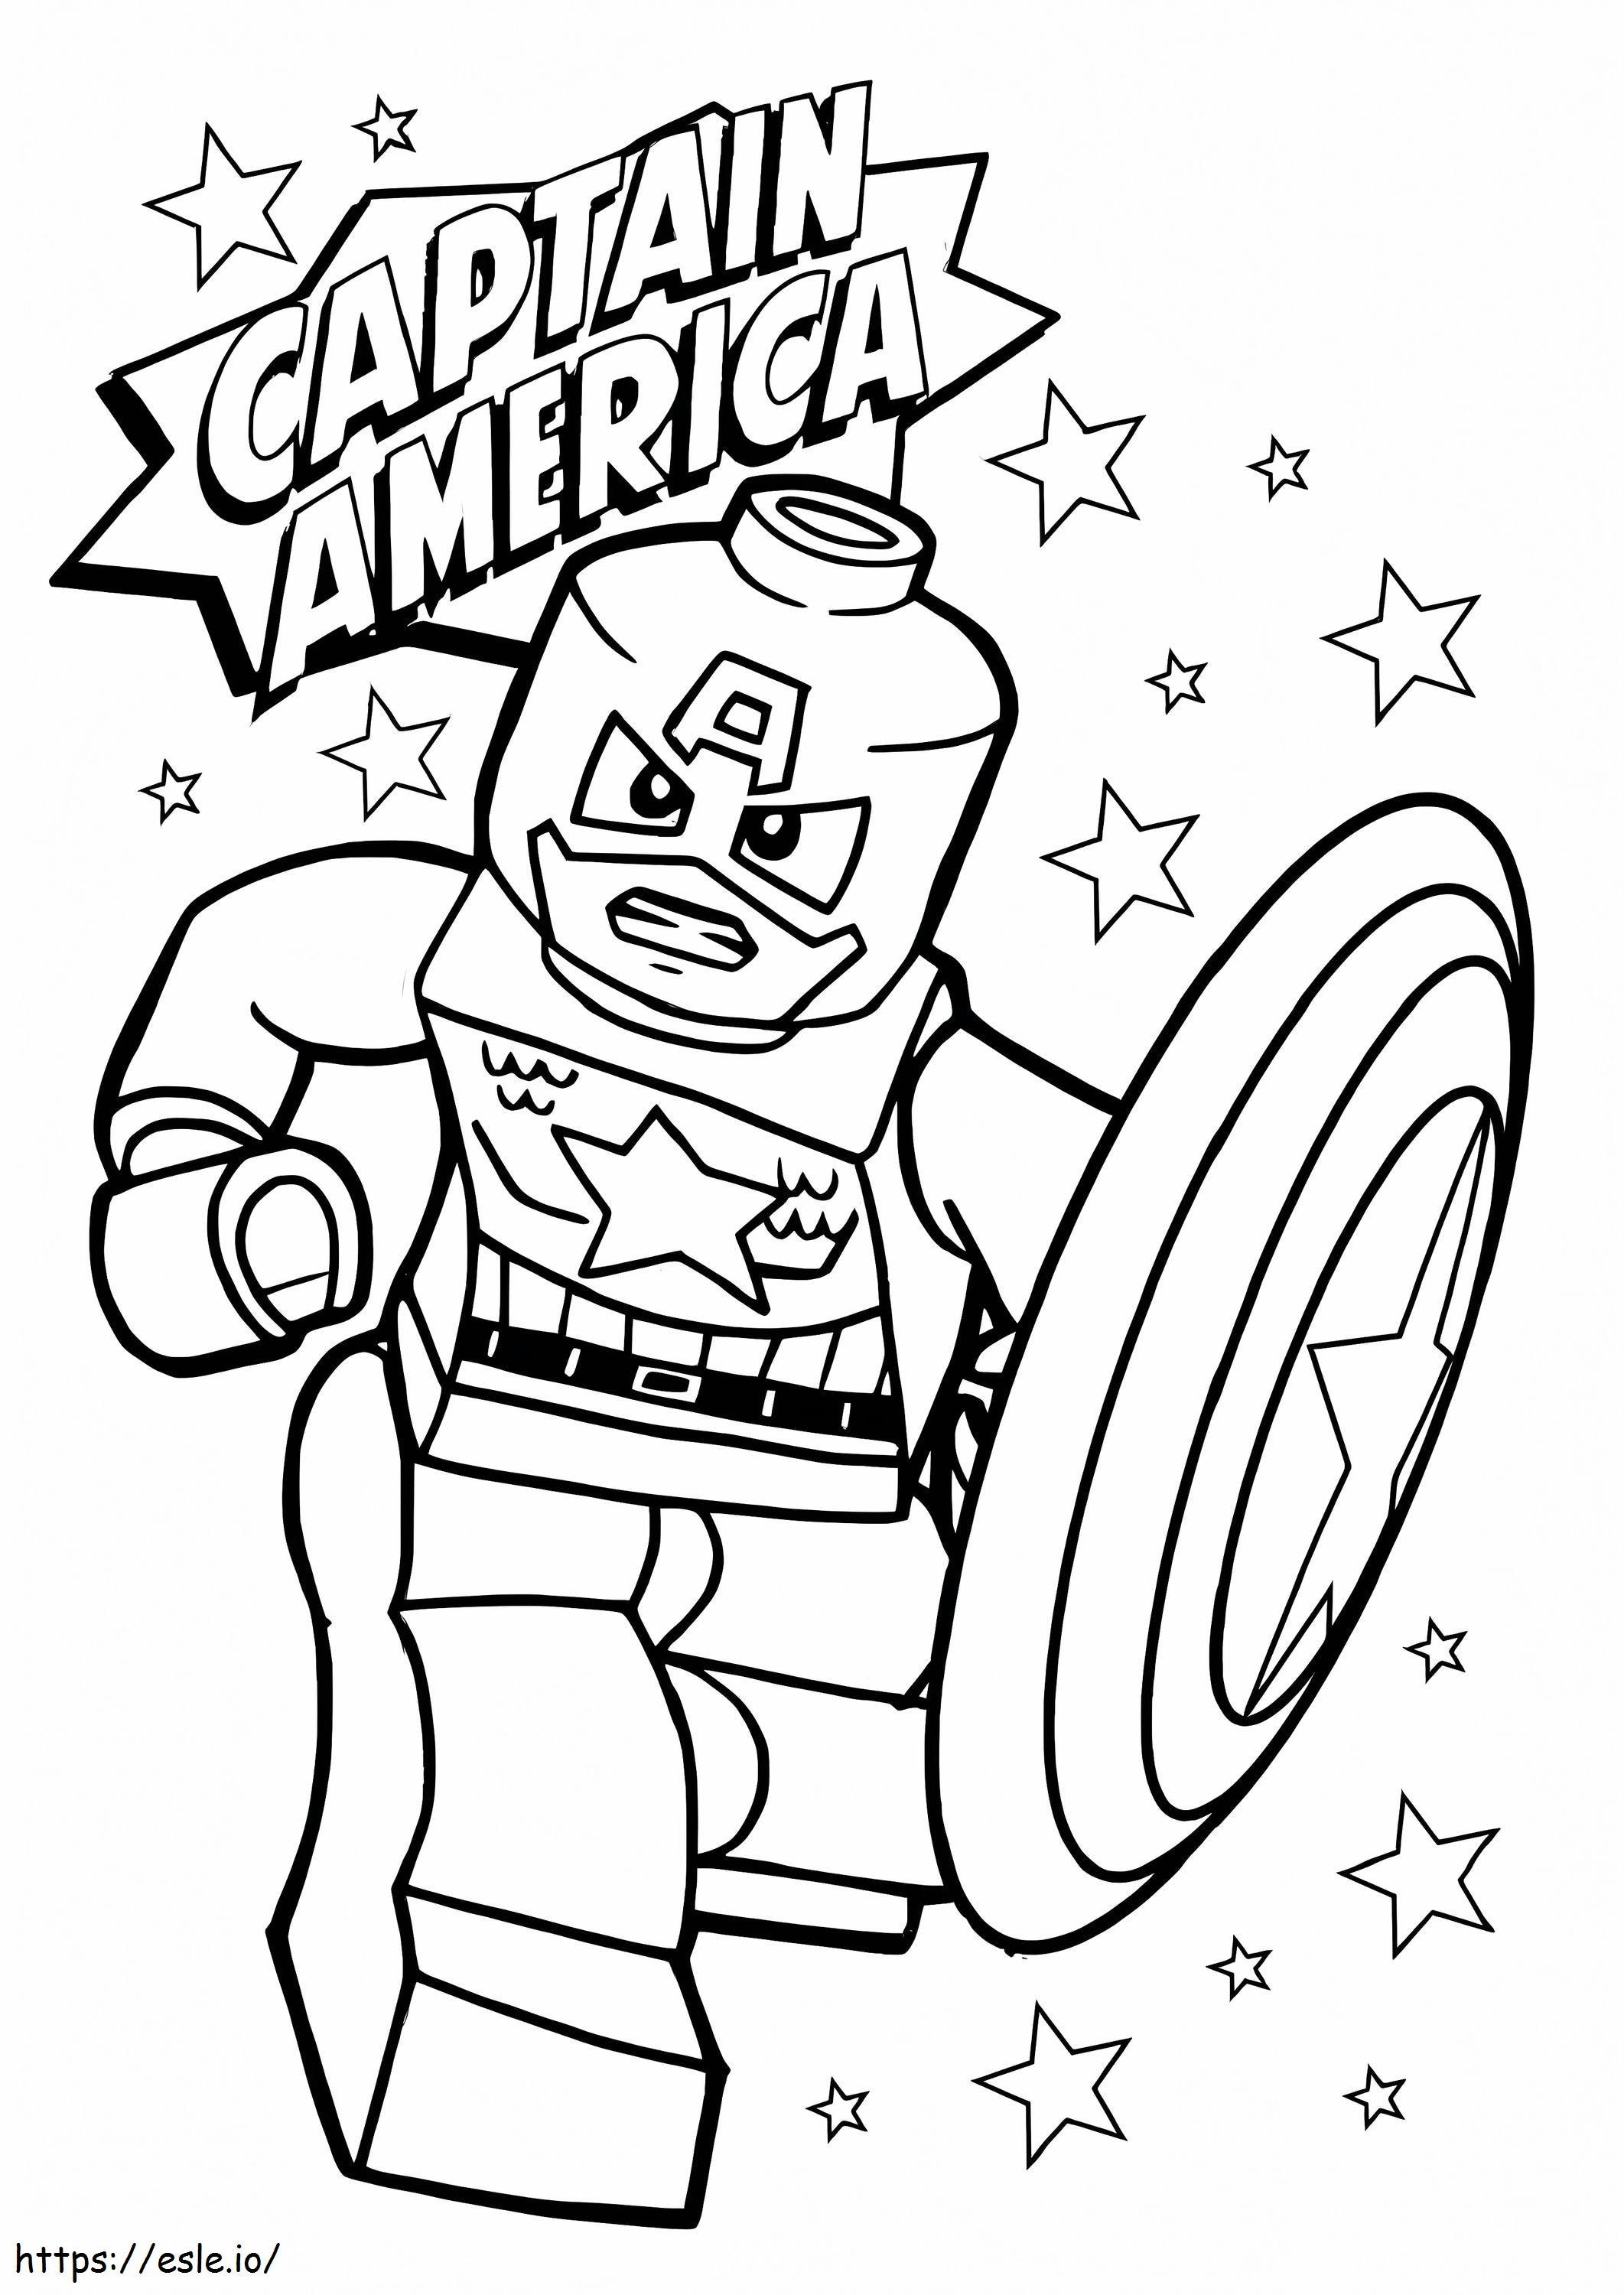 Boze Lego Captain America met ster kleurplaat kleurplaat